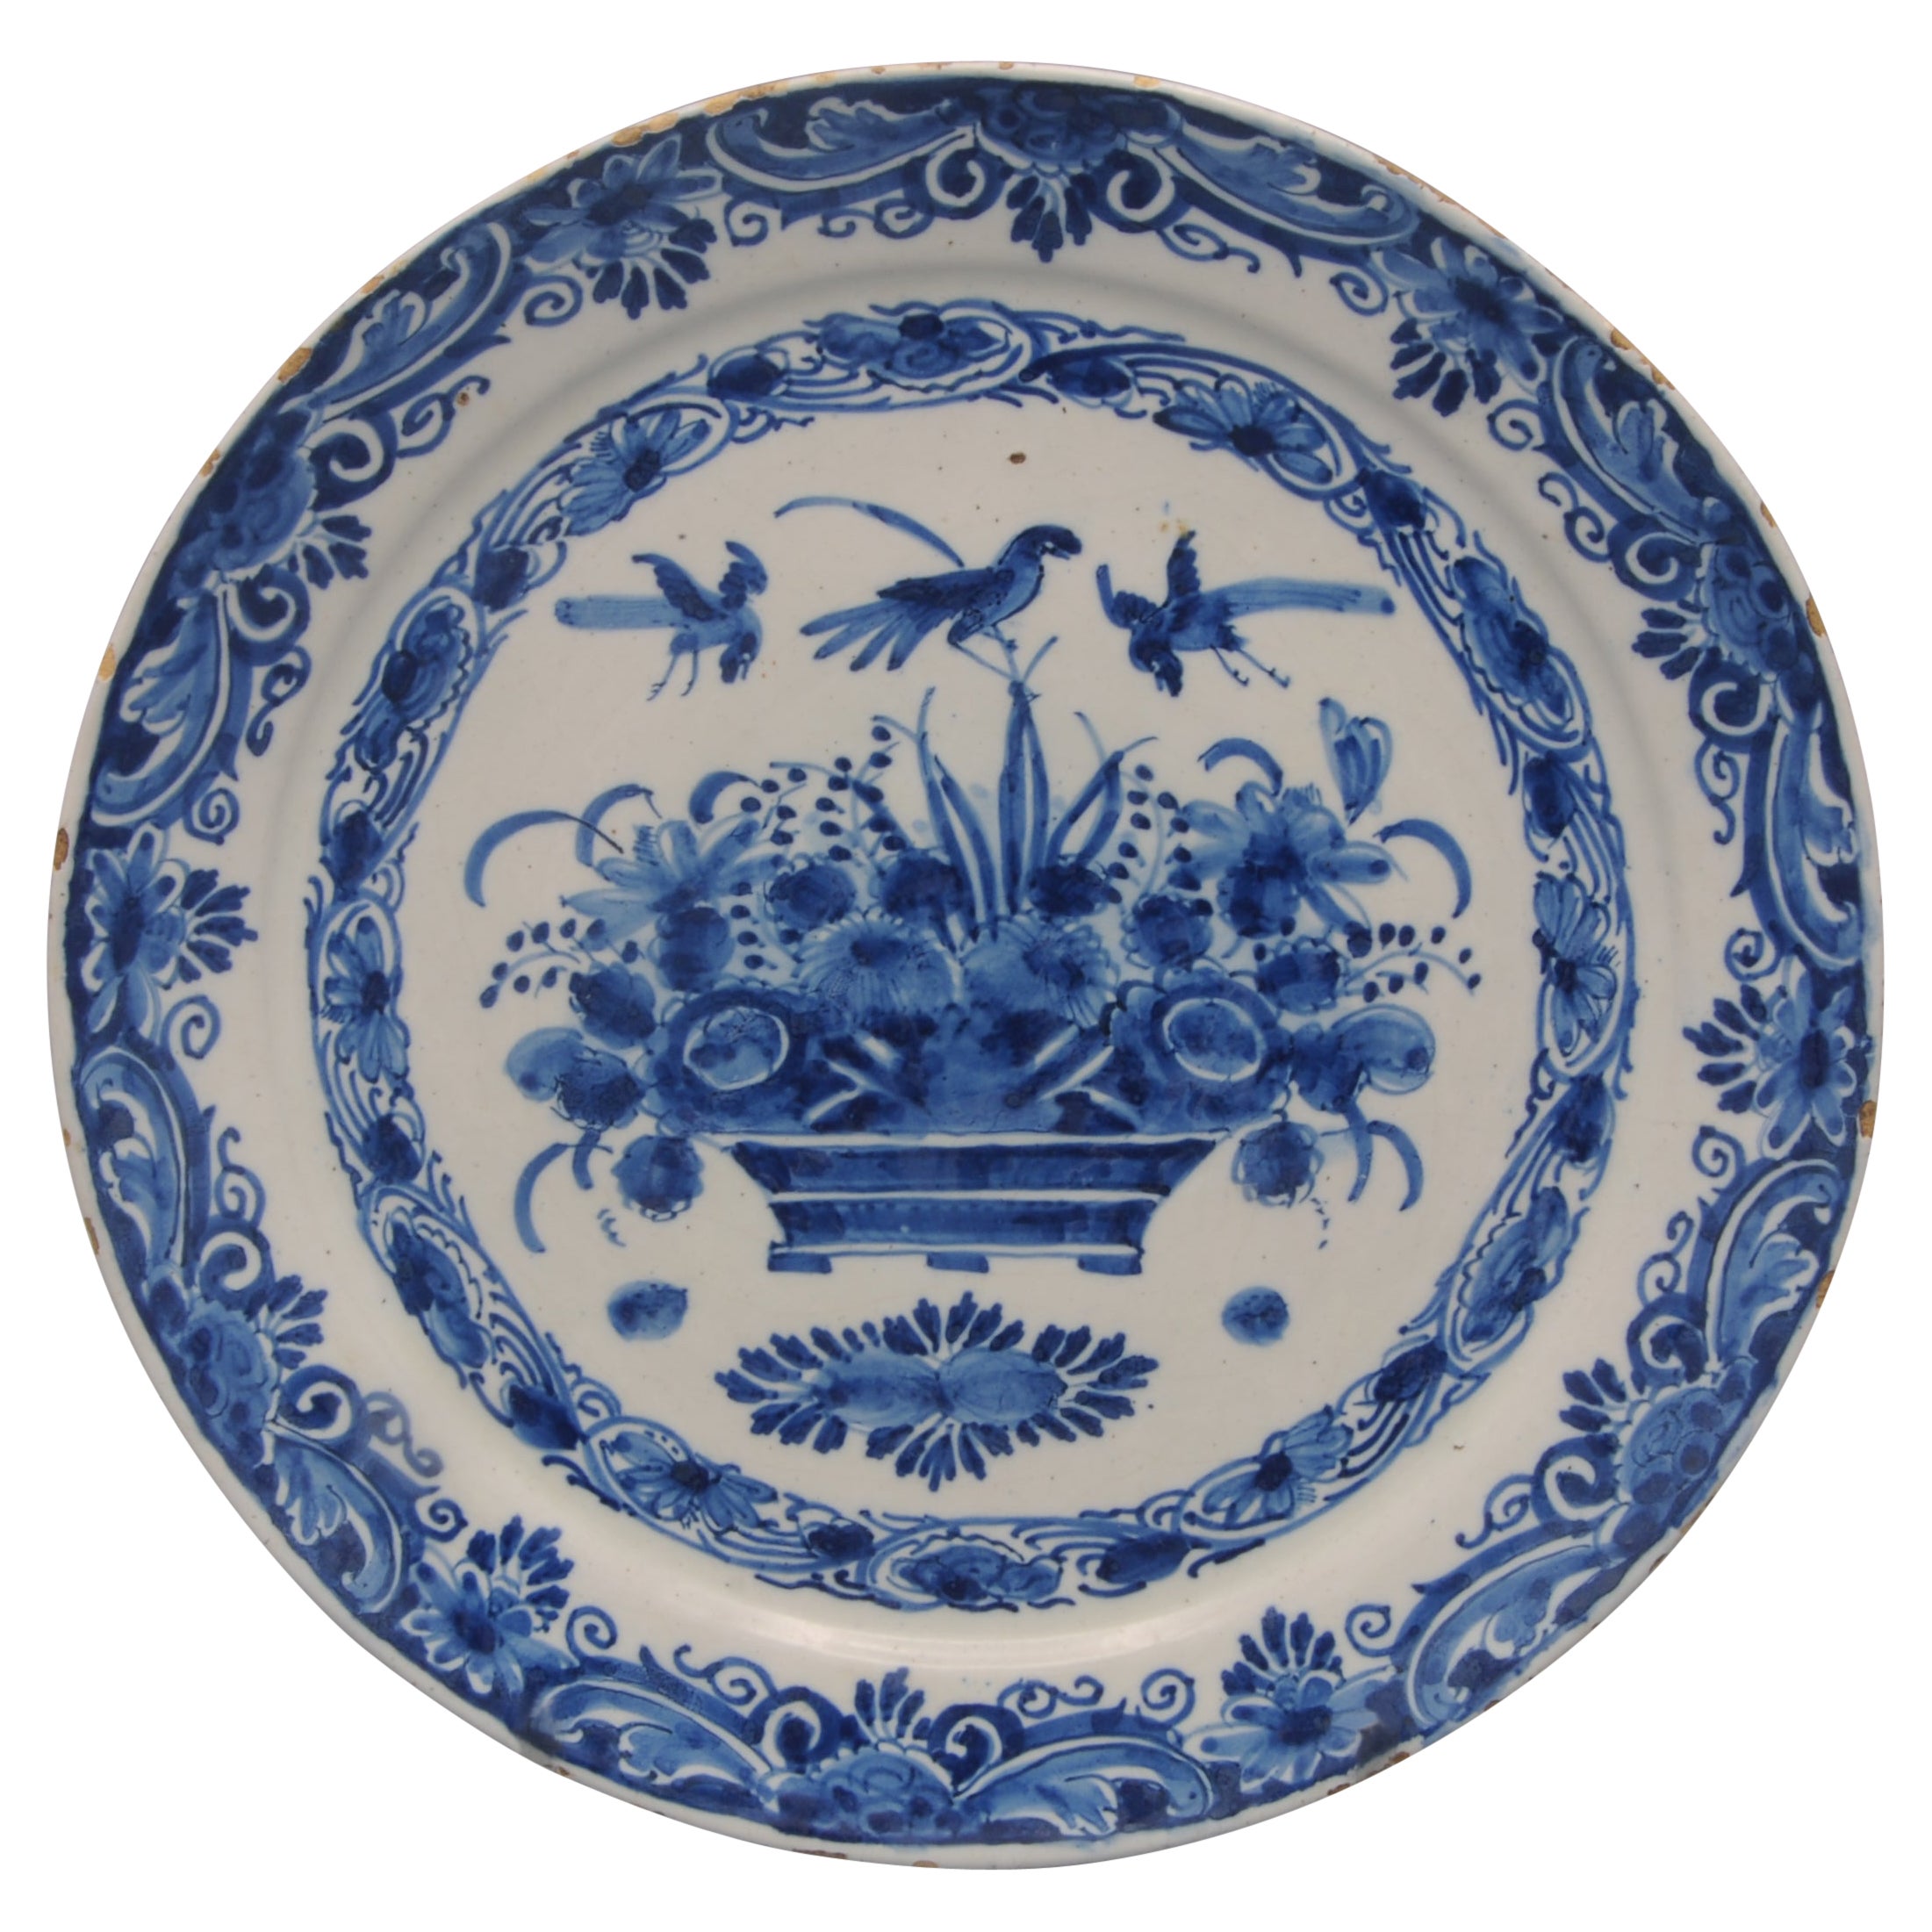 'De Grieksche A', Pieter Kocx - Dutch Delft plate with flower basket For Sale